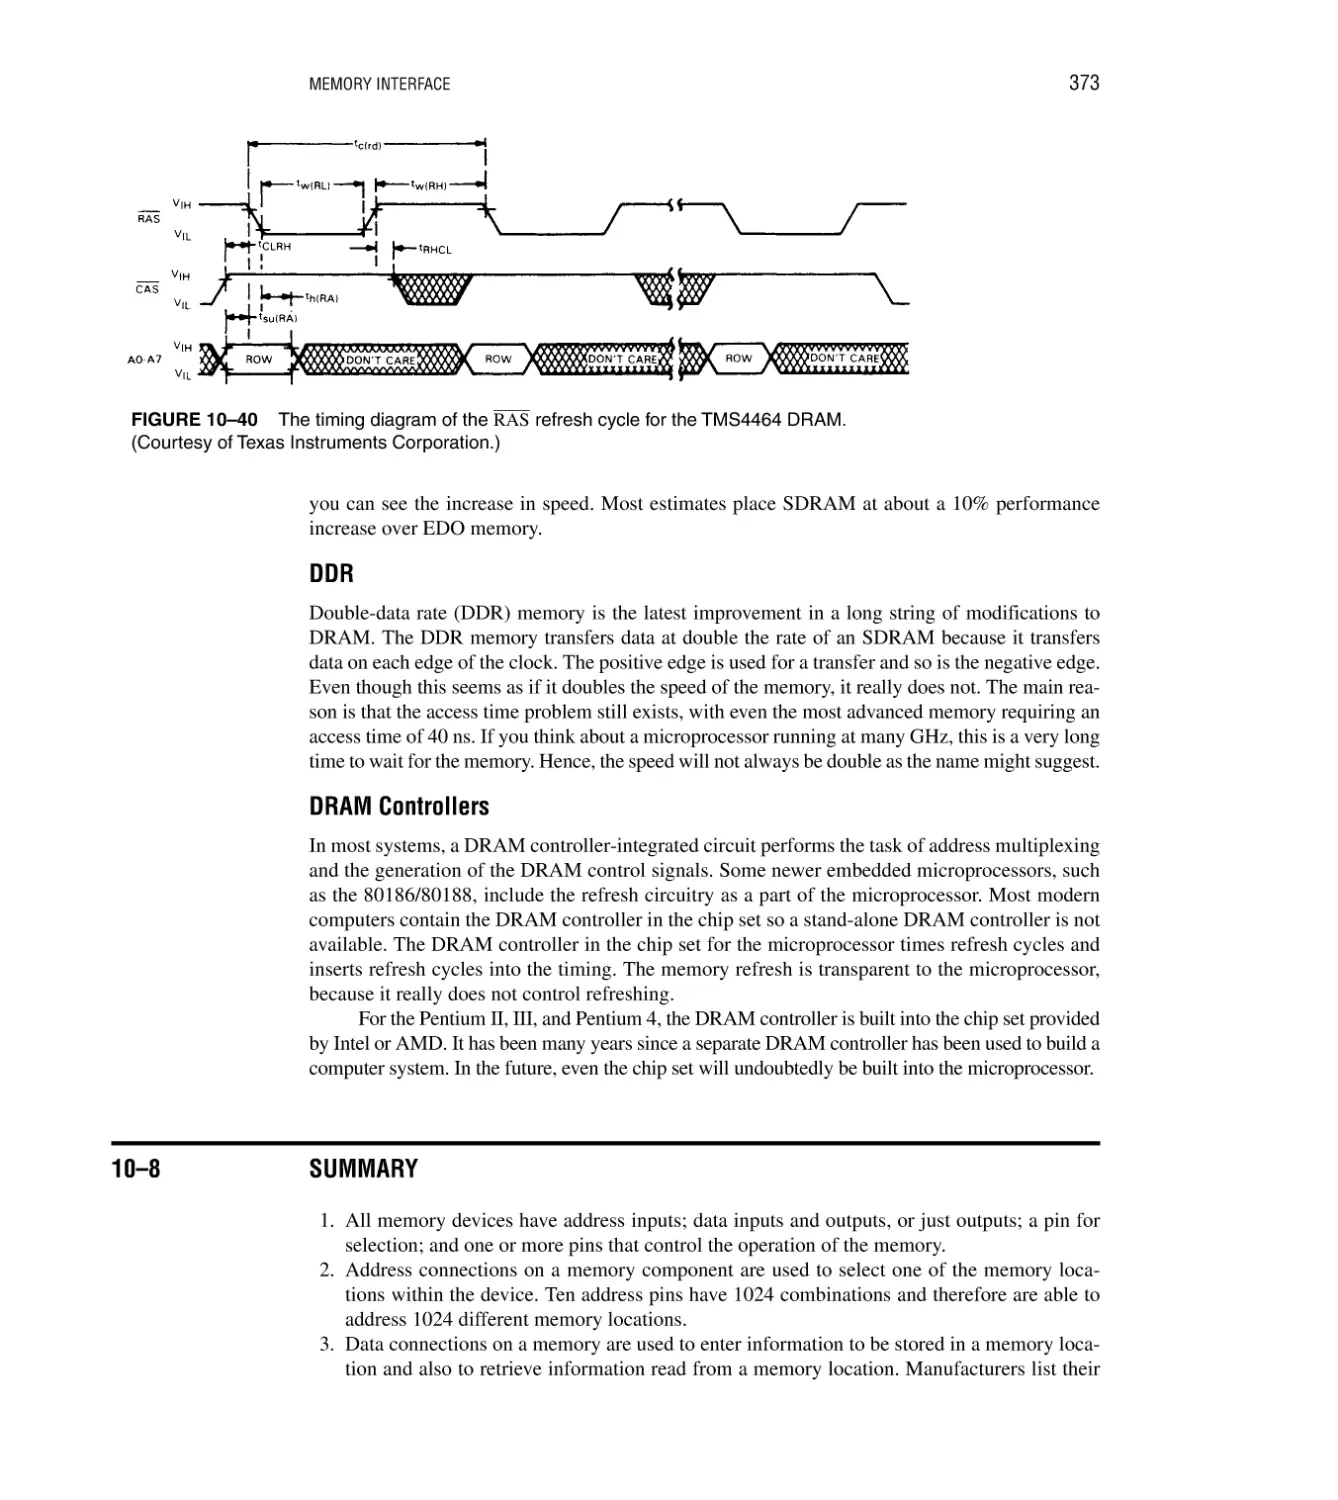 DDR
DRAM Controllers
10–8 Summary